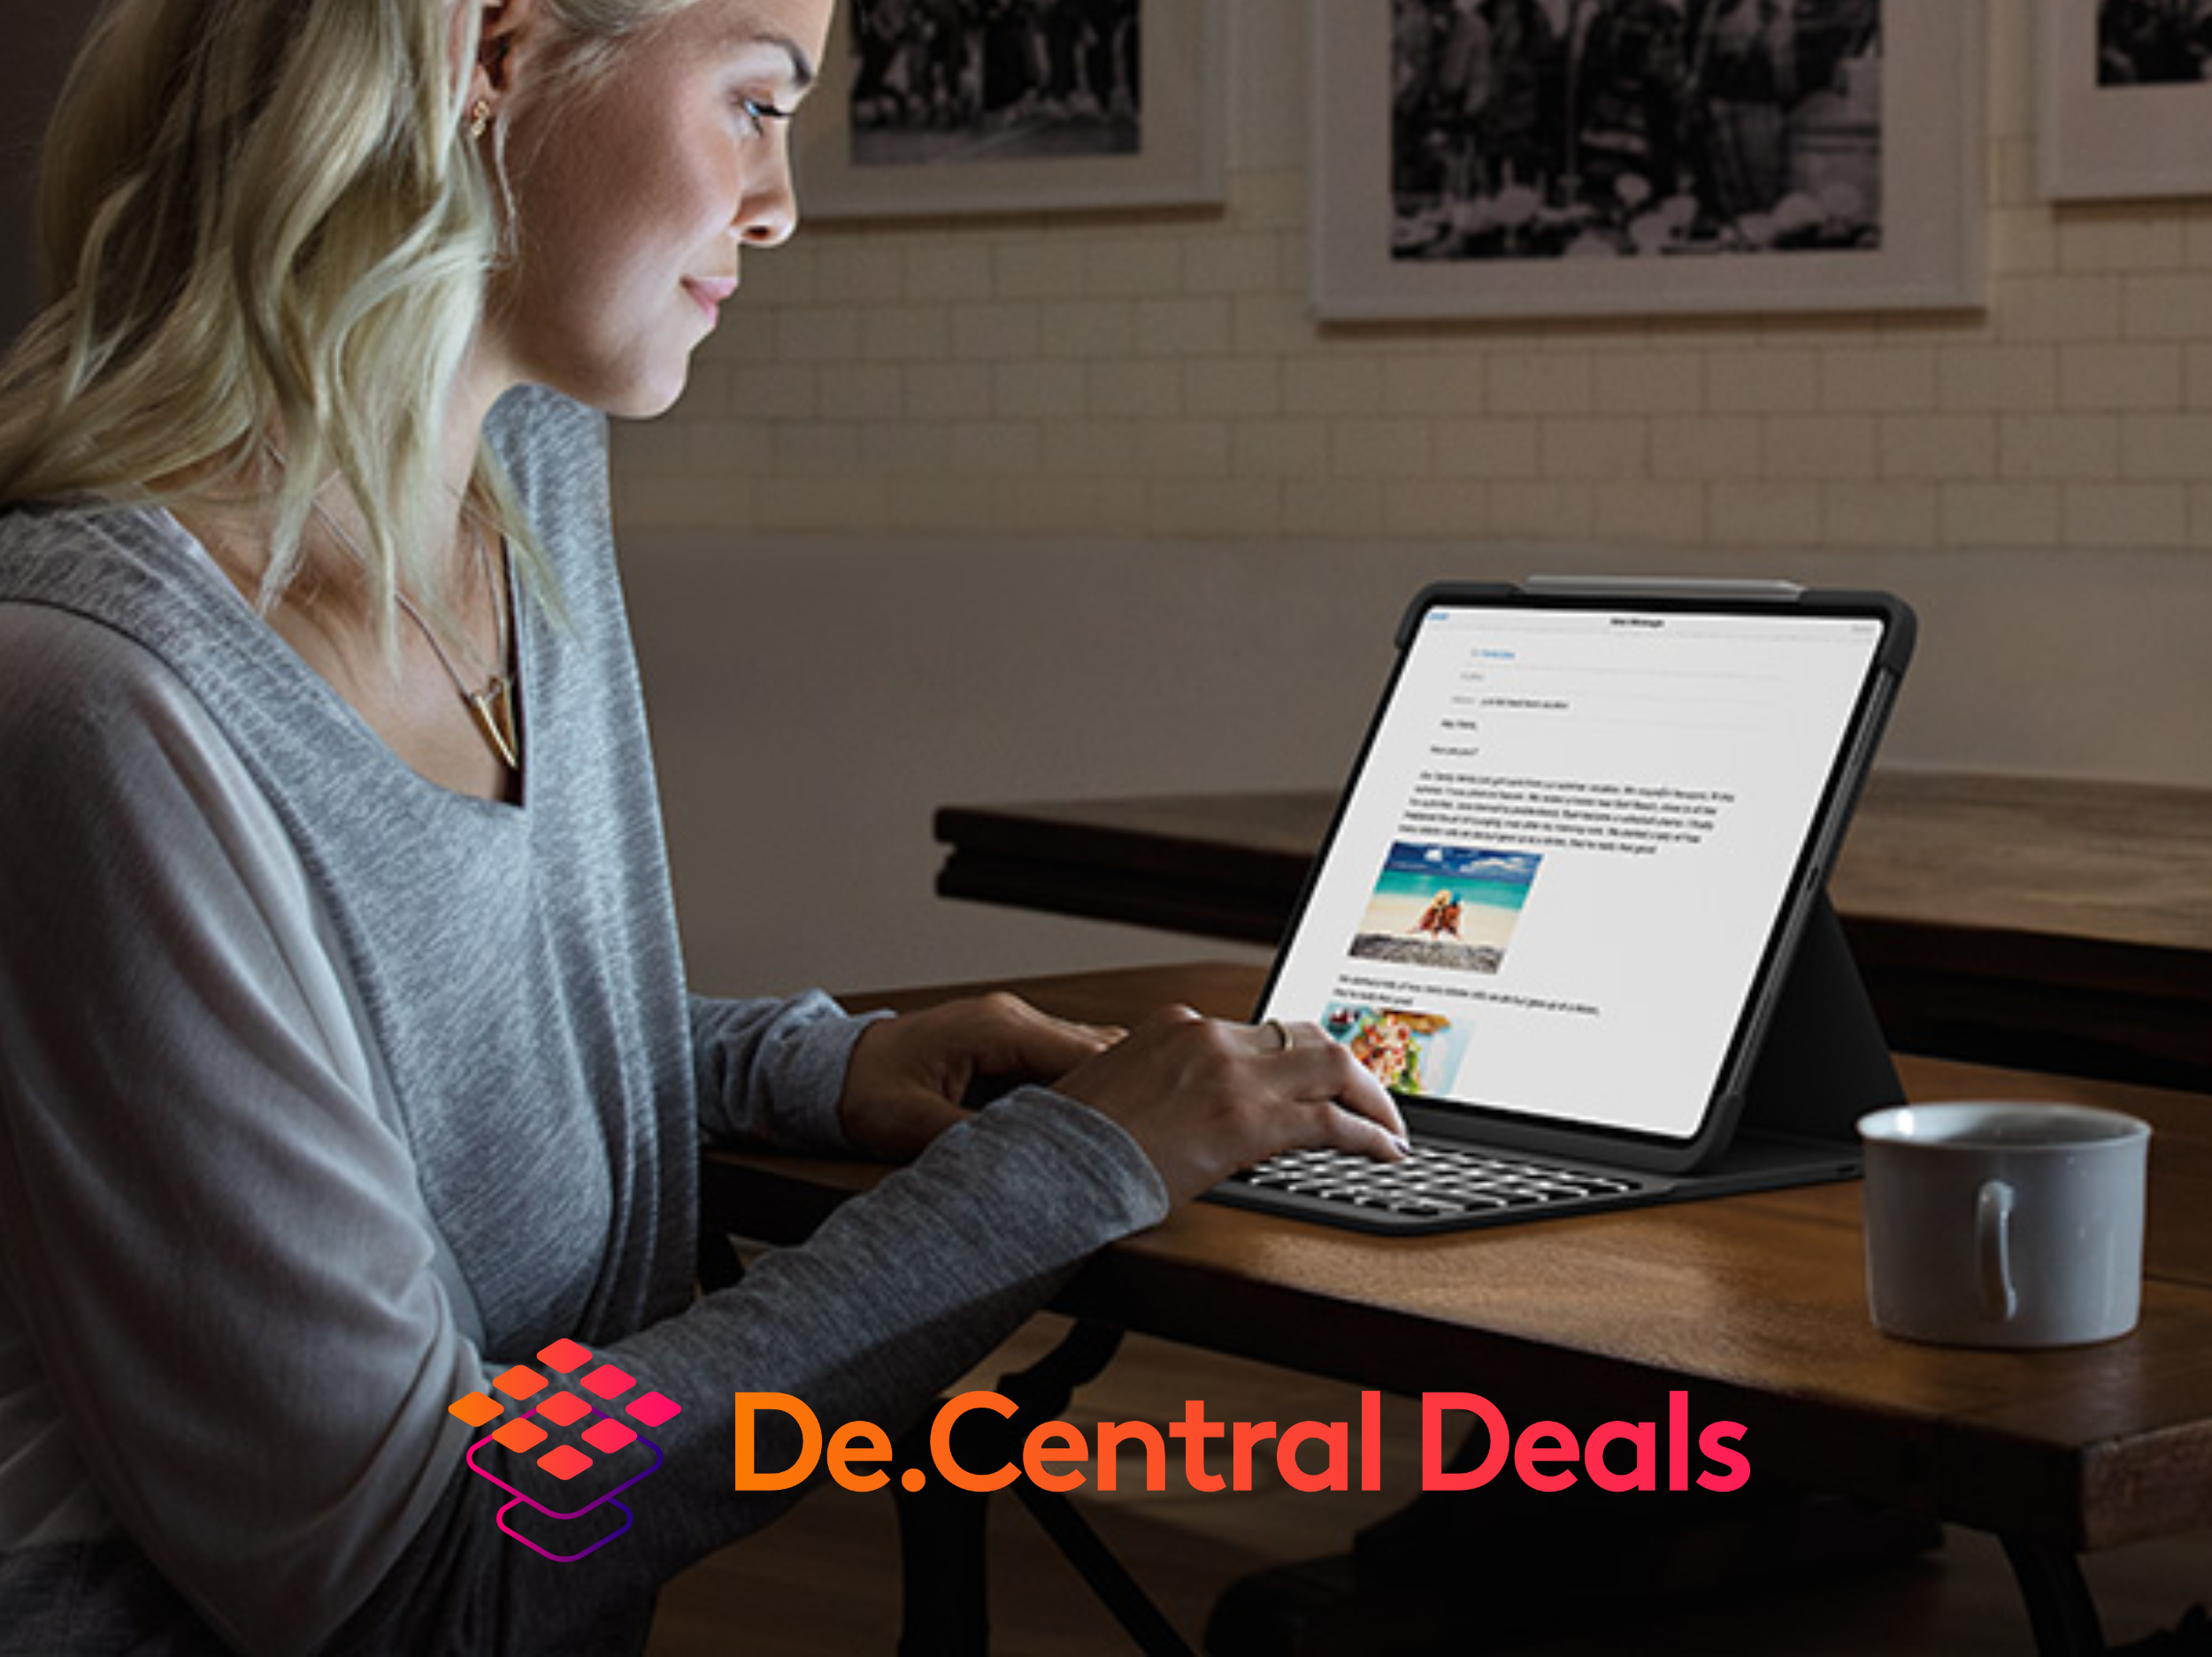 De.Central Deals | All iPad models